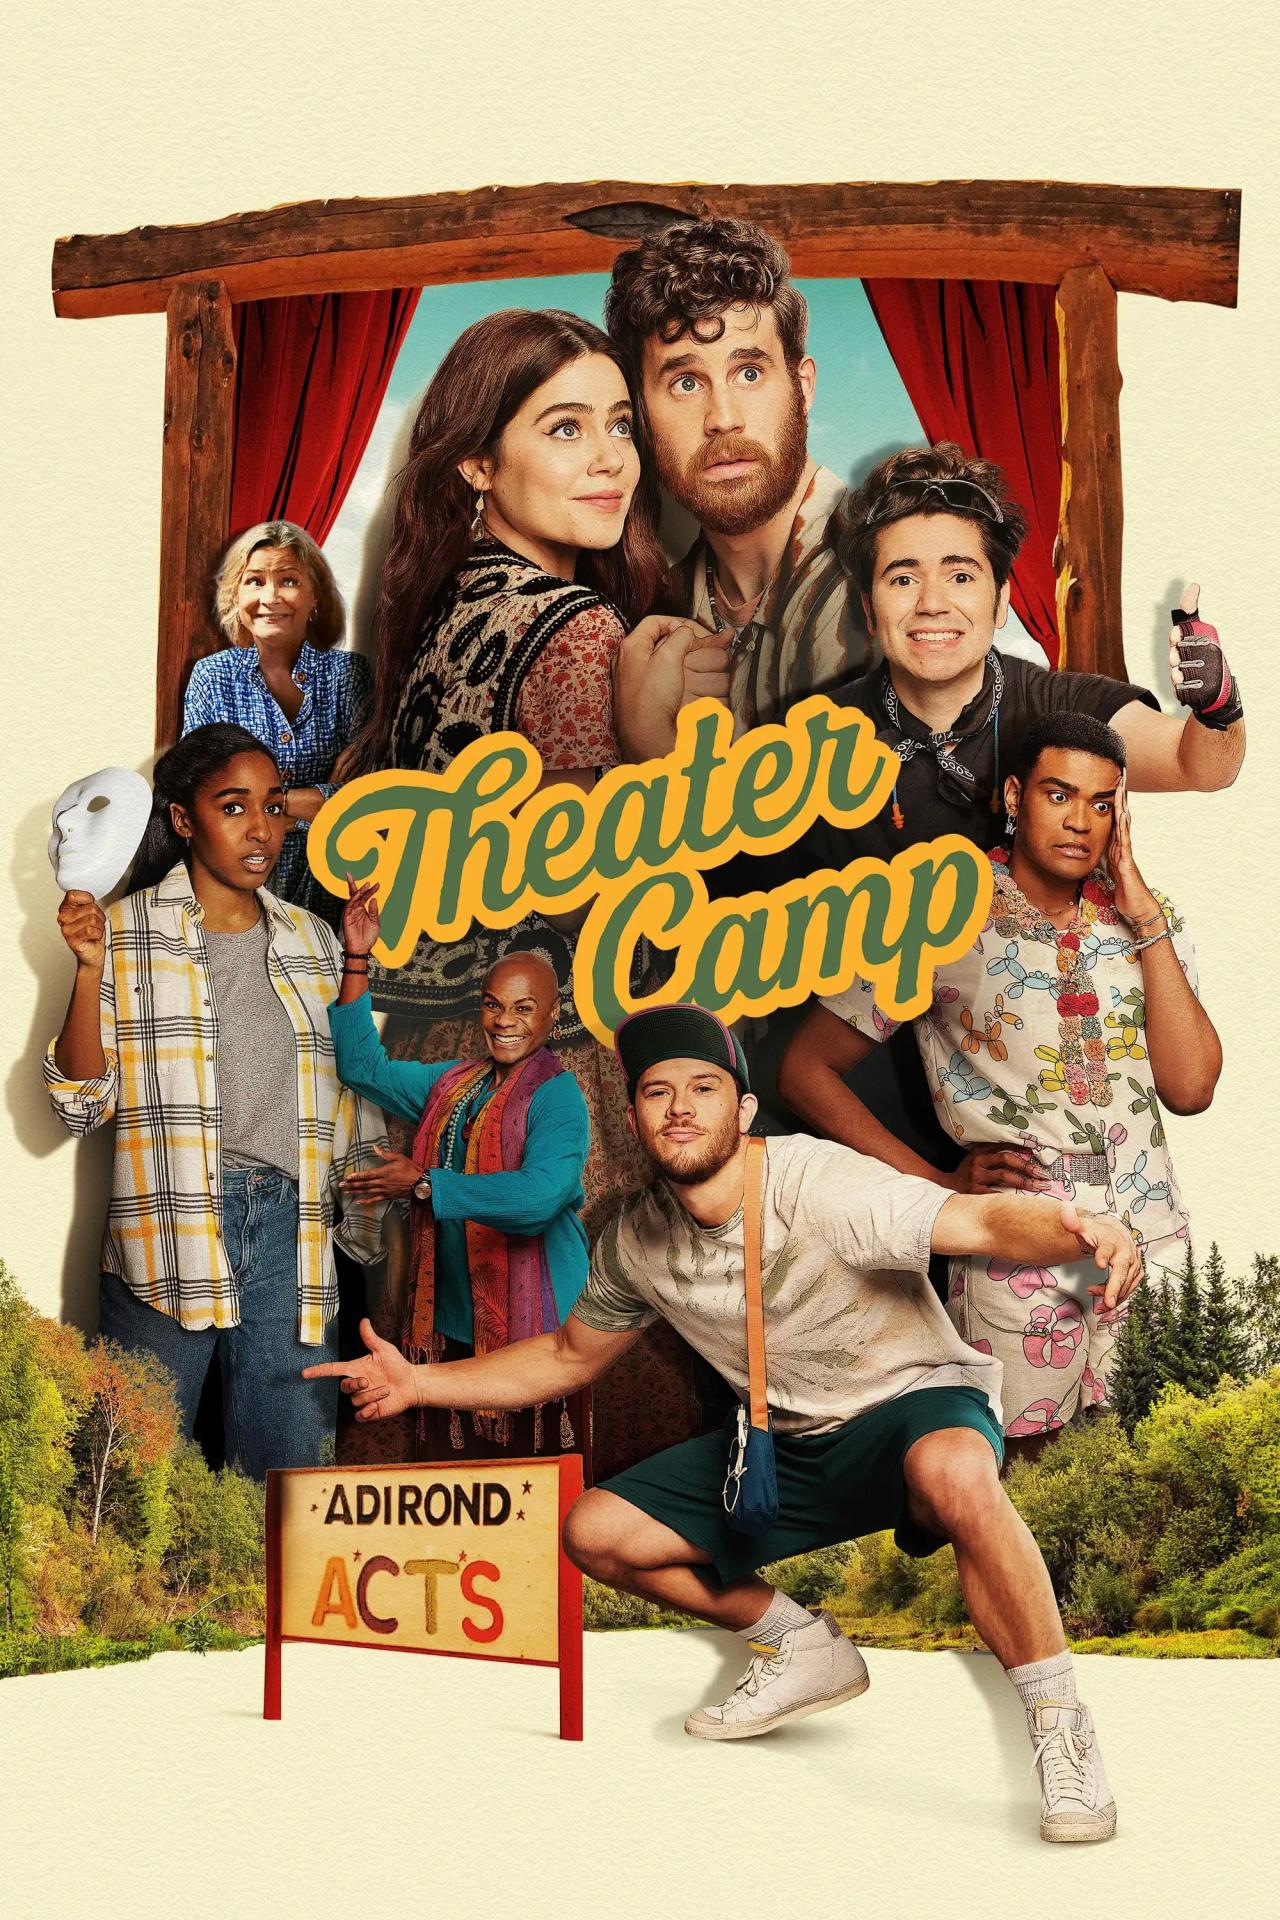 Theater Camp est-il disponible sur Netflix ou autre ?